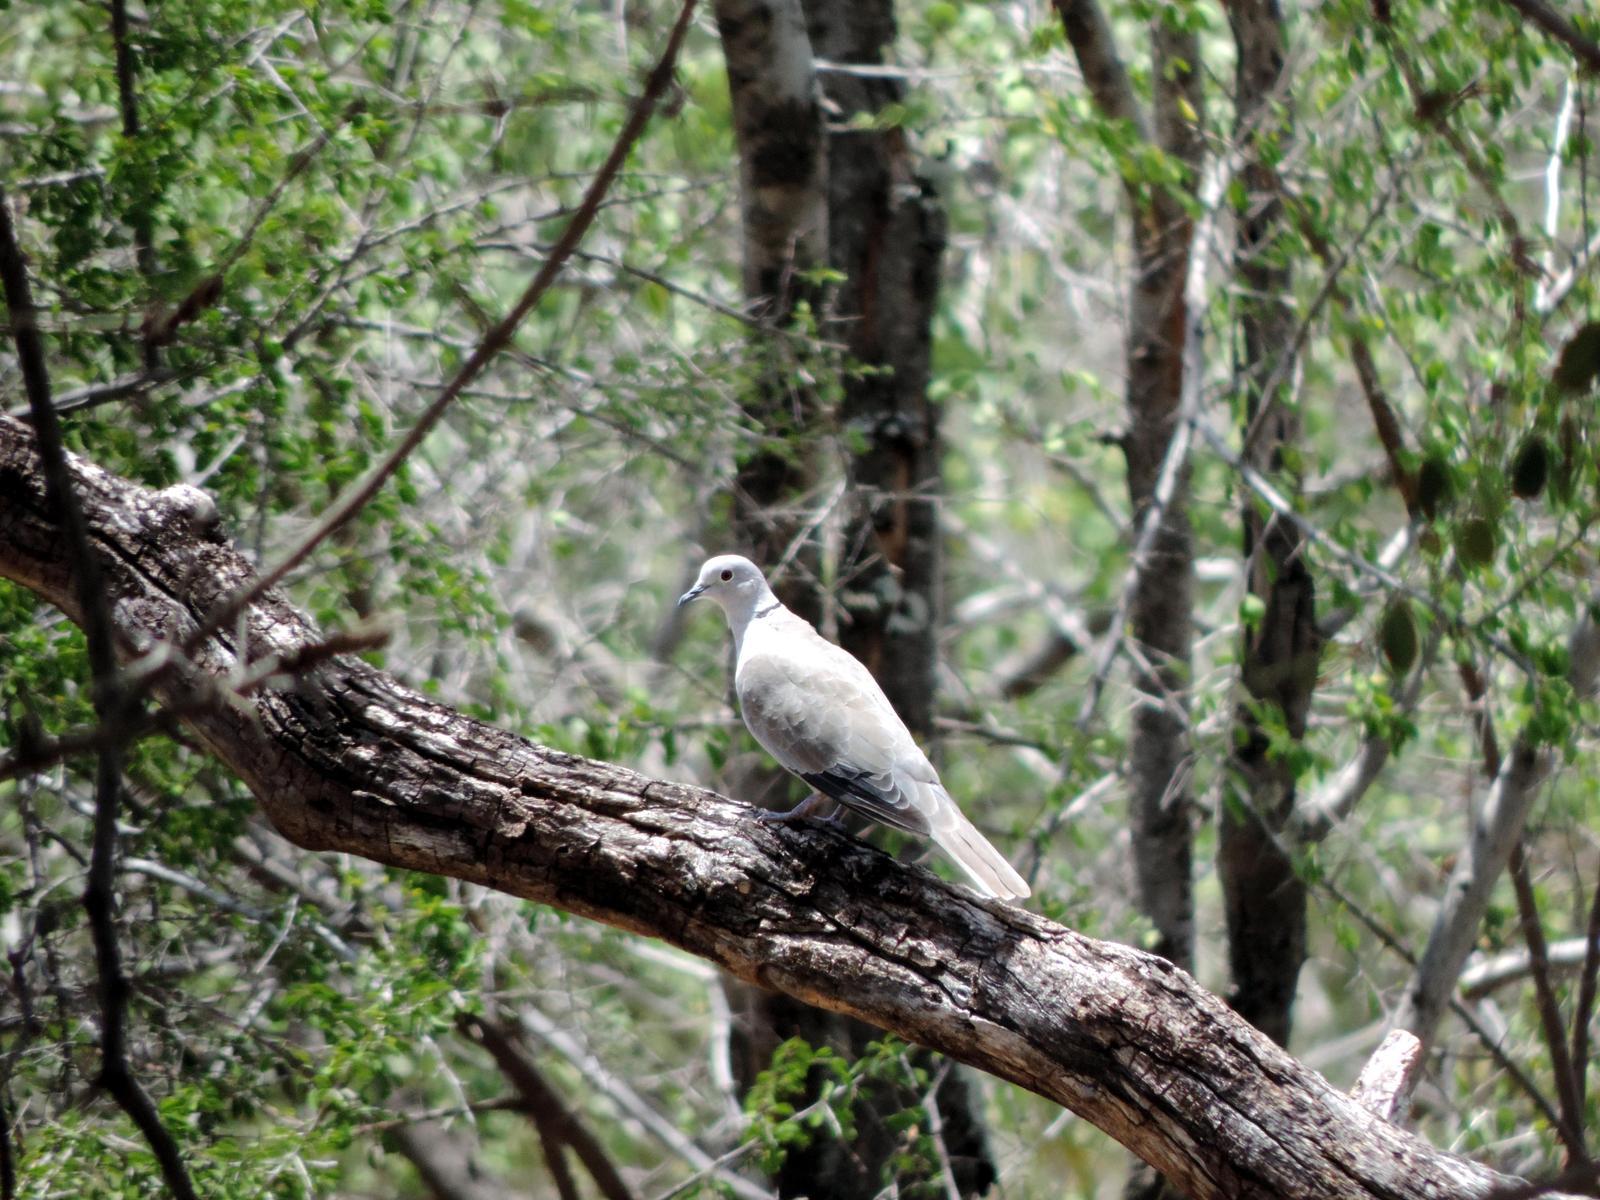 Eurasian Collared-Dove Photo by SRI RAMAN